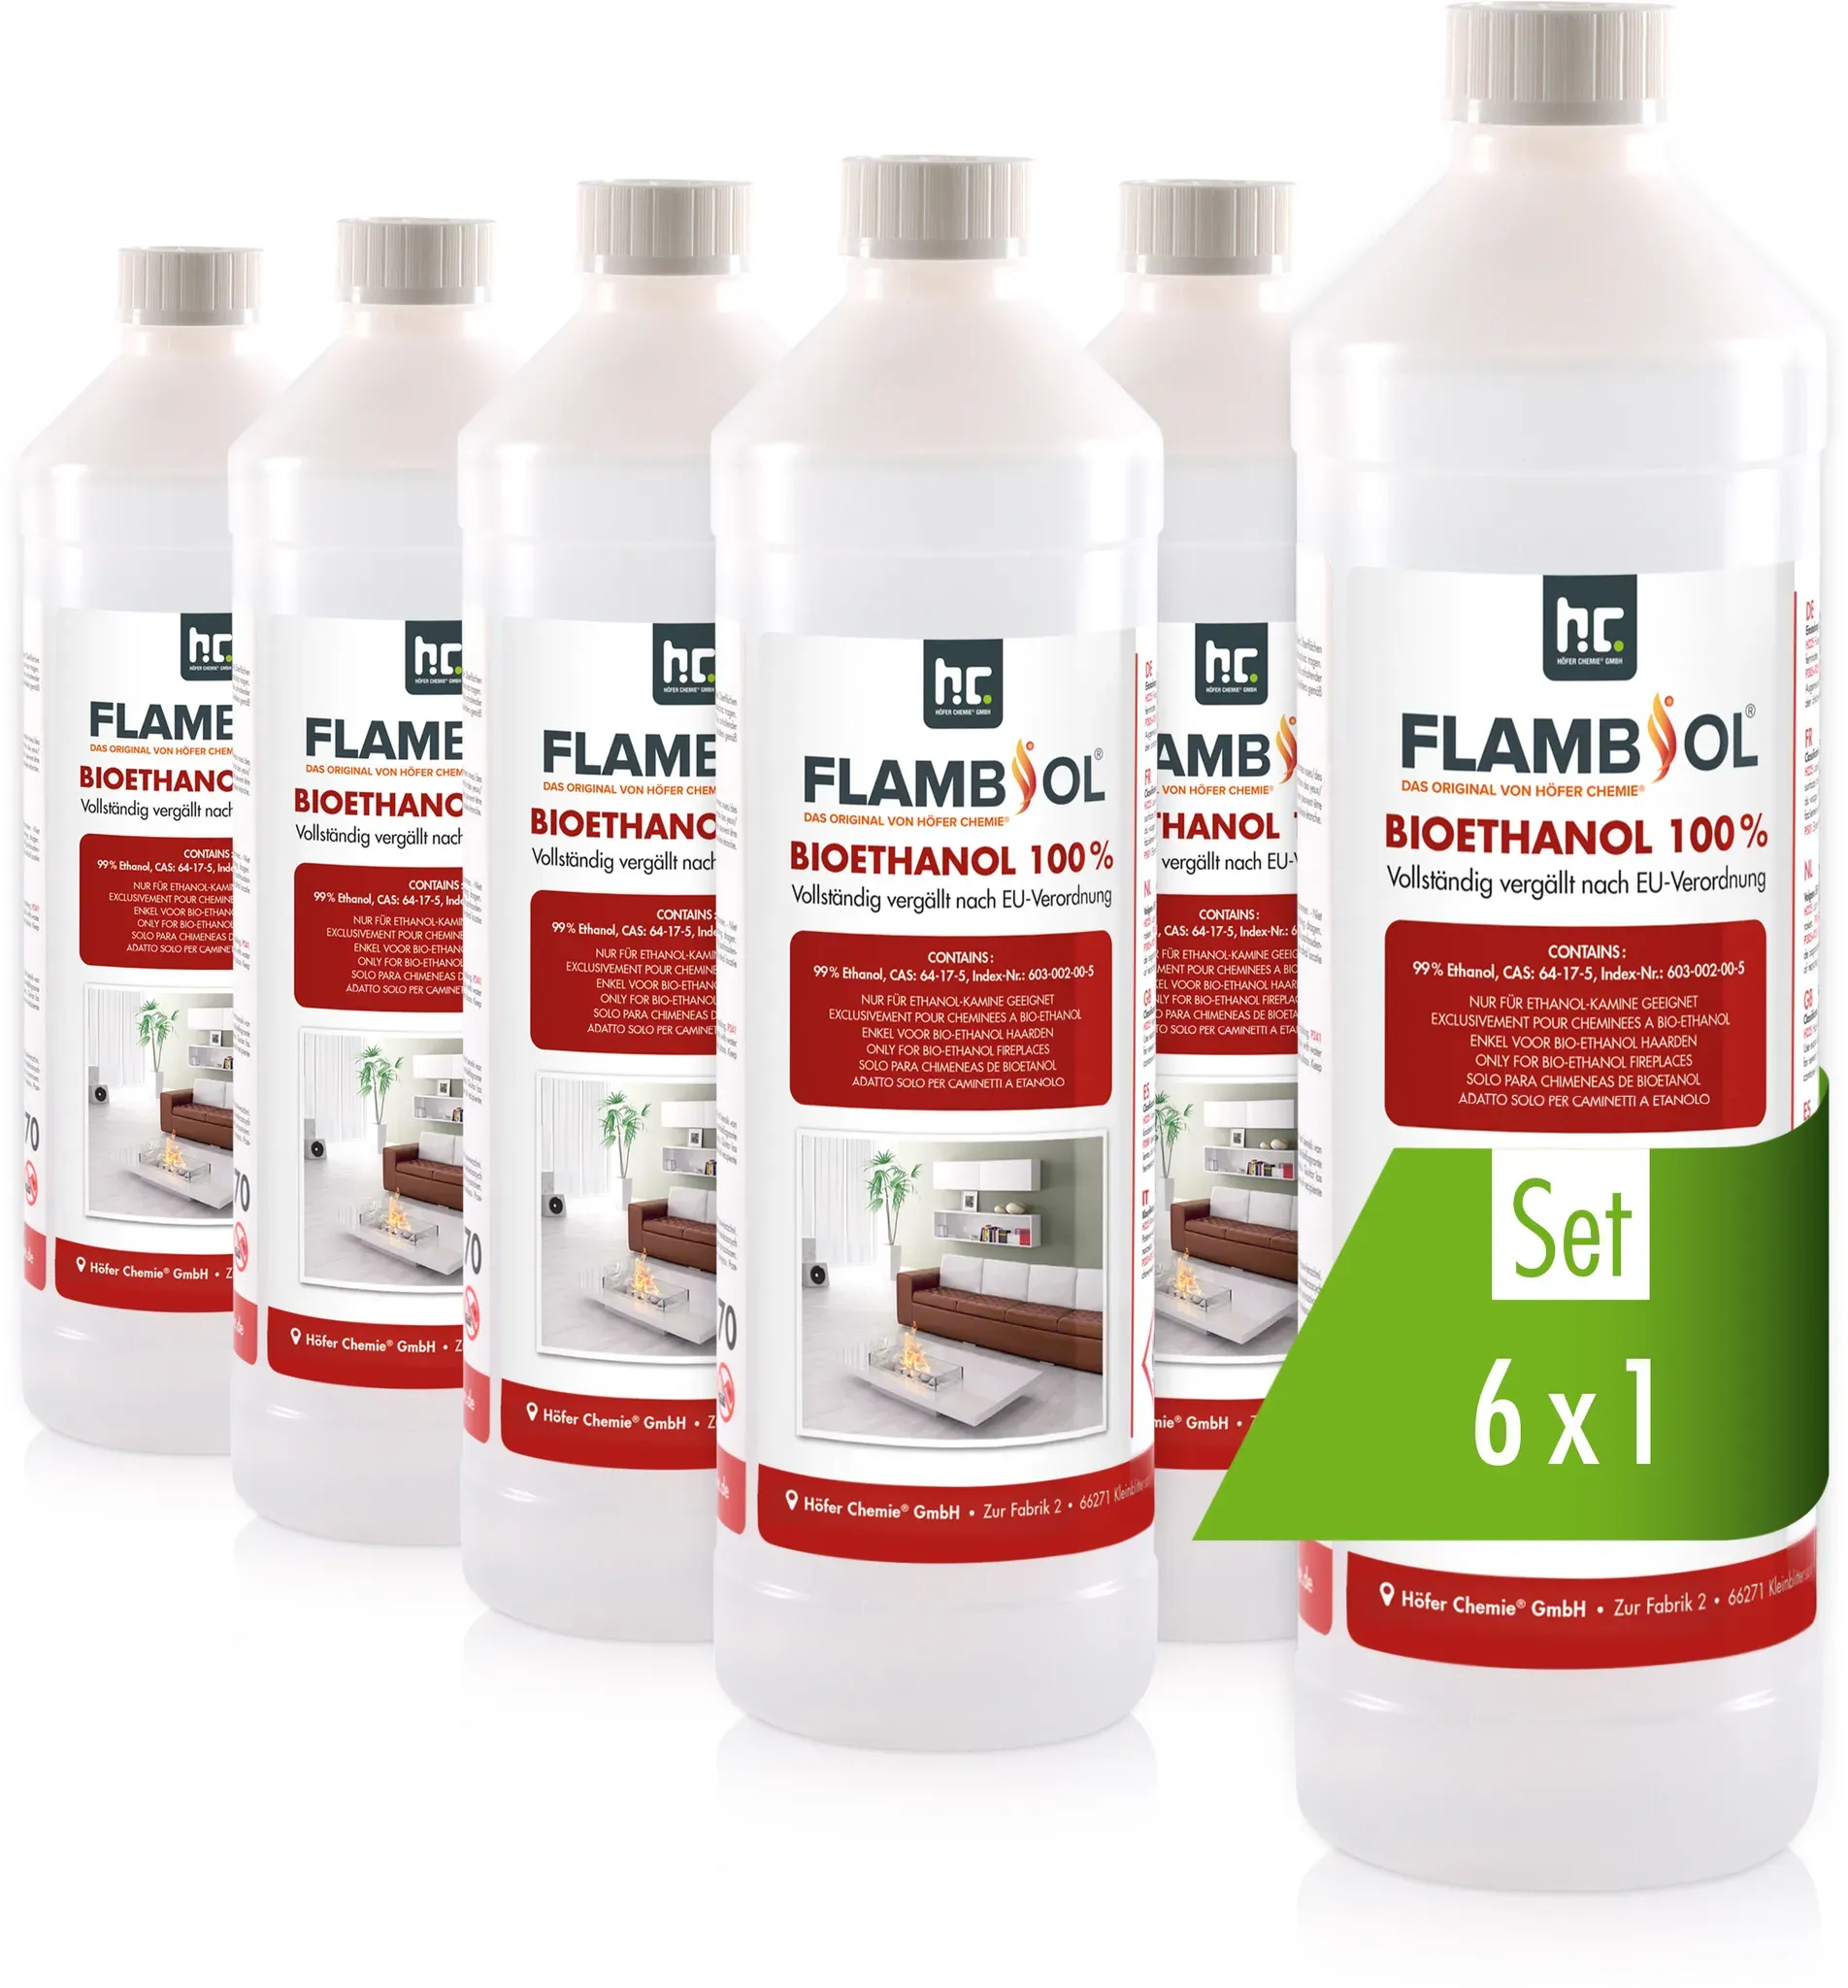 6 x 1 L FLAMBIOL® Bioethanol Hochrein 100 % in Flaschen für Edelstahl-Tisch-Kami...